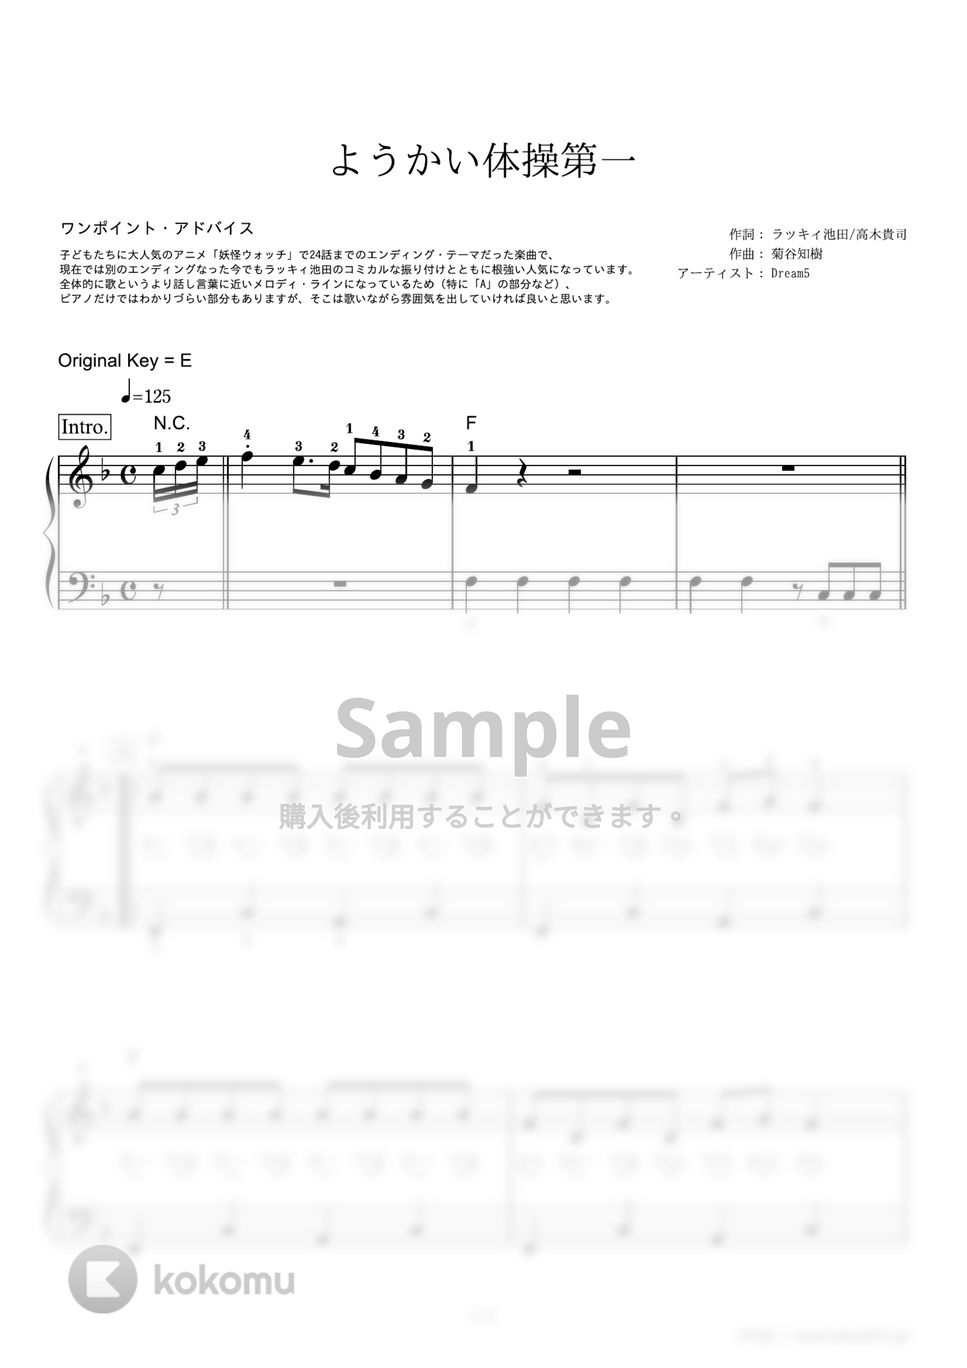 Dream5 - ようかい体操第一 (アニメ『妖怪ウォッチ』エンディングテーマ) by ピアノの本棚